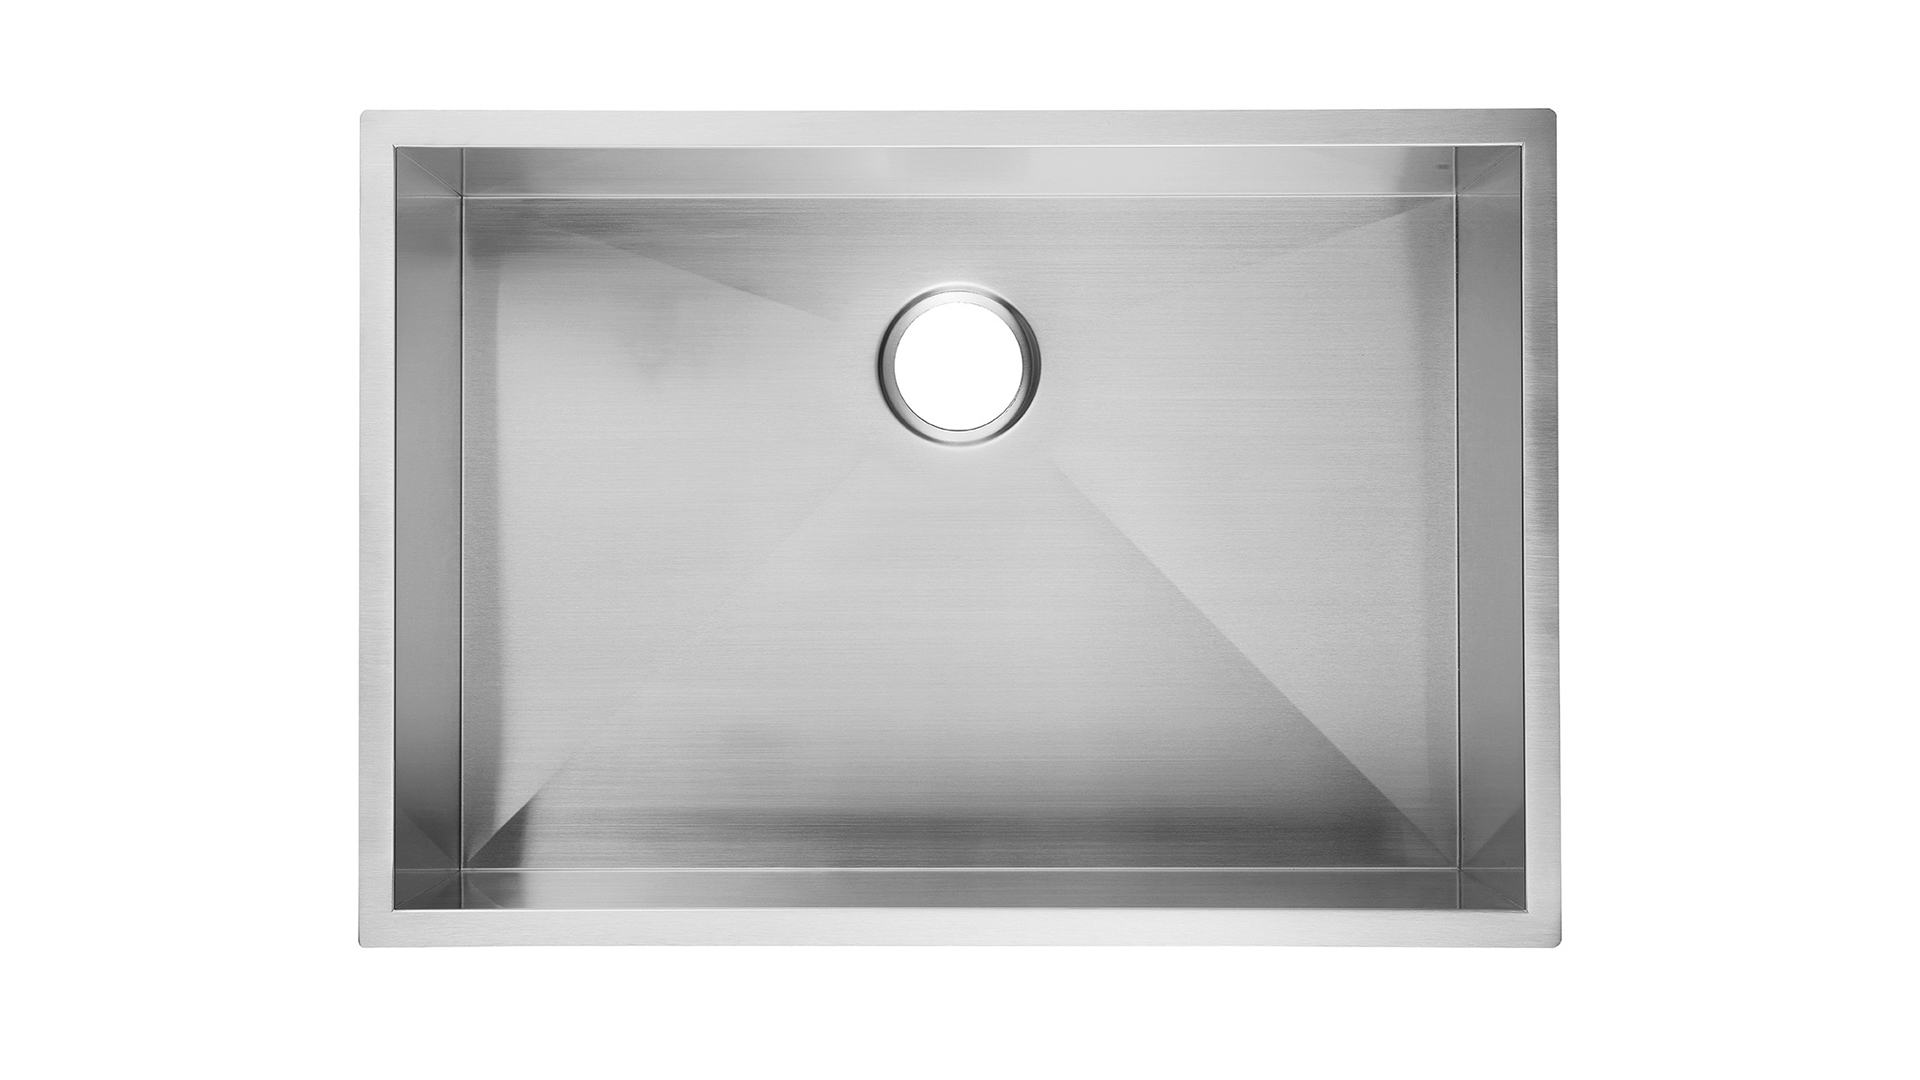 23-calowy zlew kuchenny Undermount ze stali nierdzewnej 9-calowy głęboki, Aquacubic Undermount Kitchen Sink